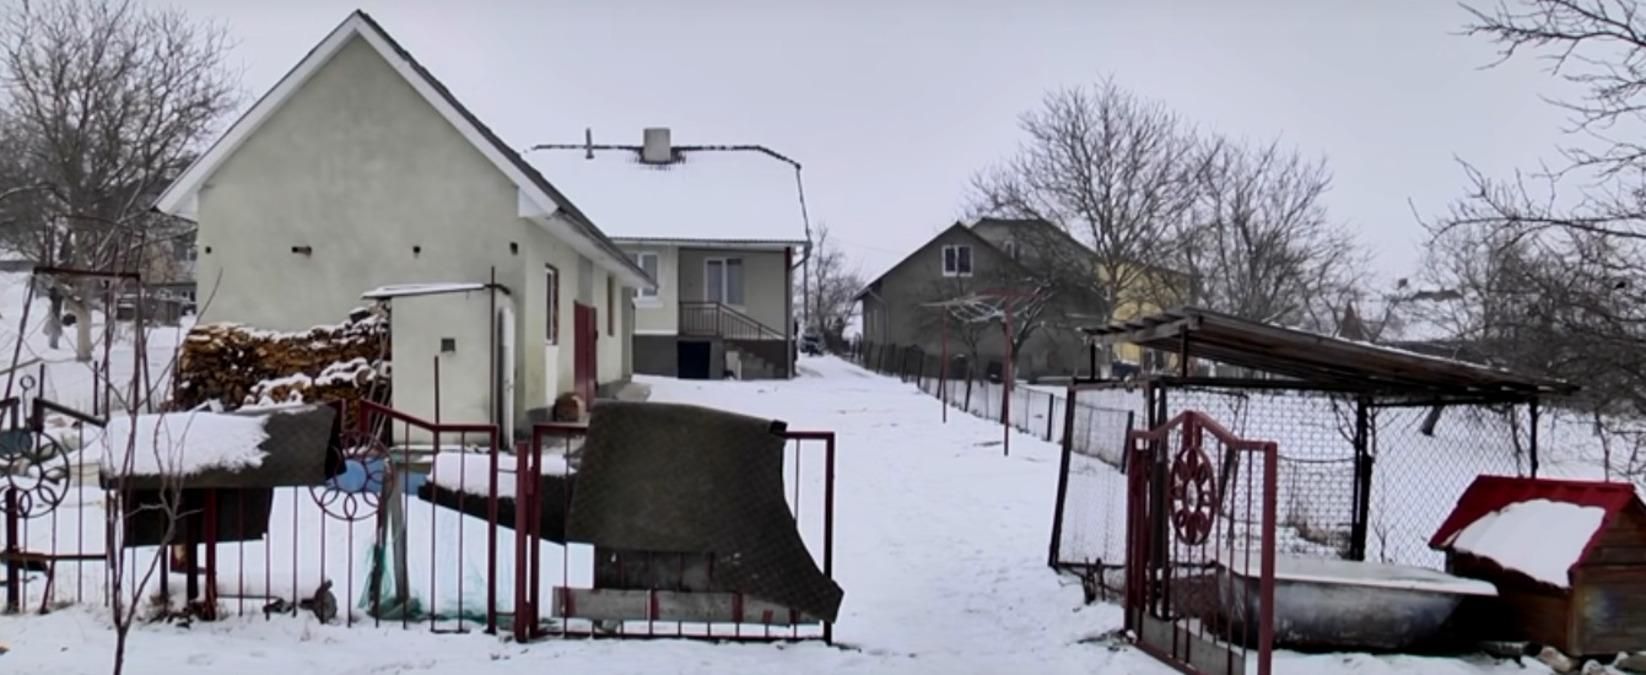 Душераздирающие крики всколыхнули село: подробности жестокого убийства неподалеку Трускавца